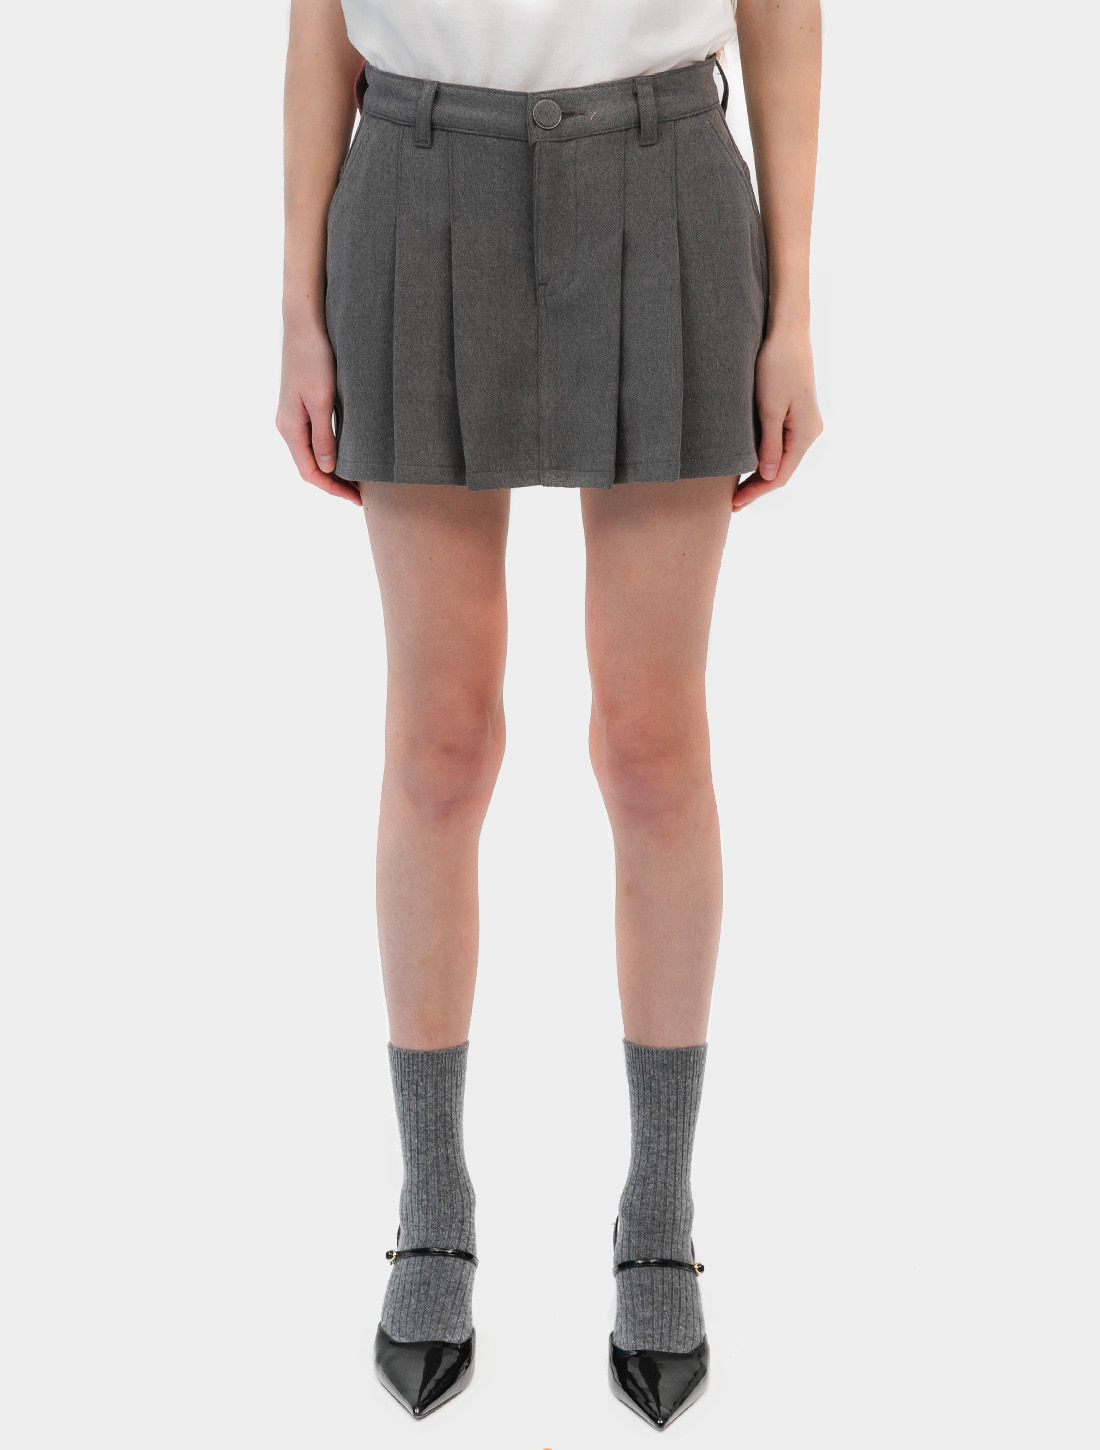 KISY logo pleats skirt (gray)